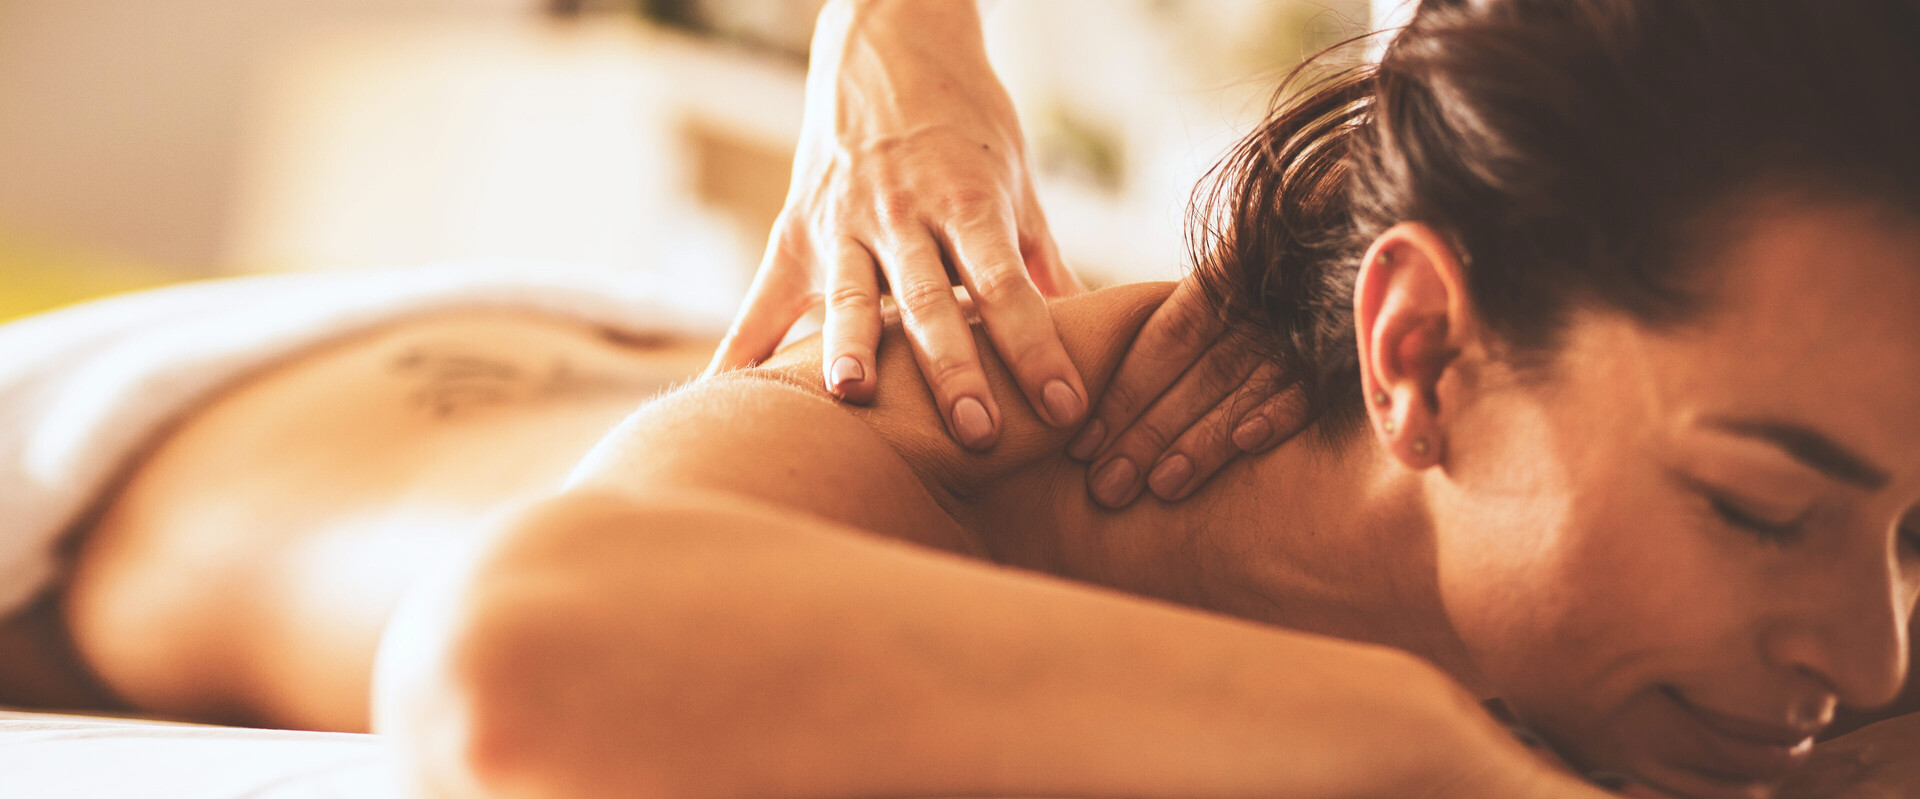 Eine liegende Frau erhält eine Massage. Auch Regeneration sollte Bestandteil der Körperpflege sein.